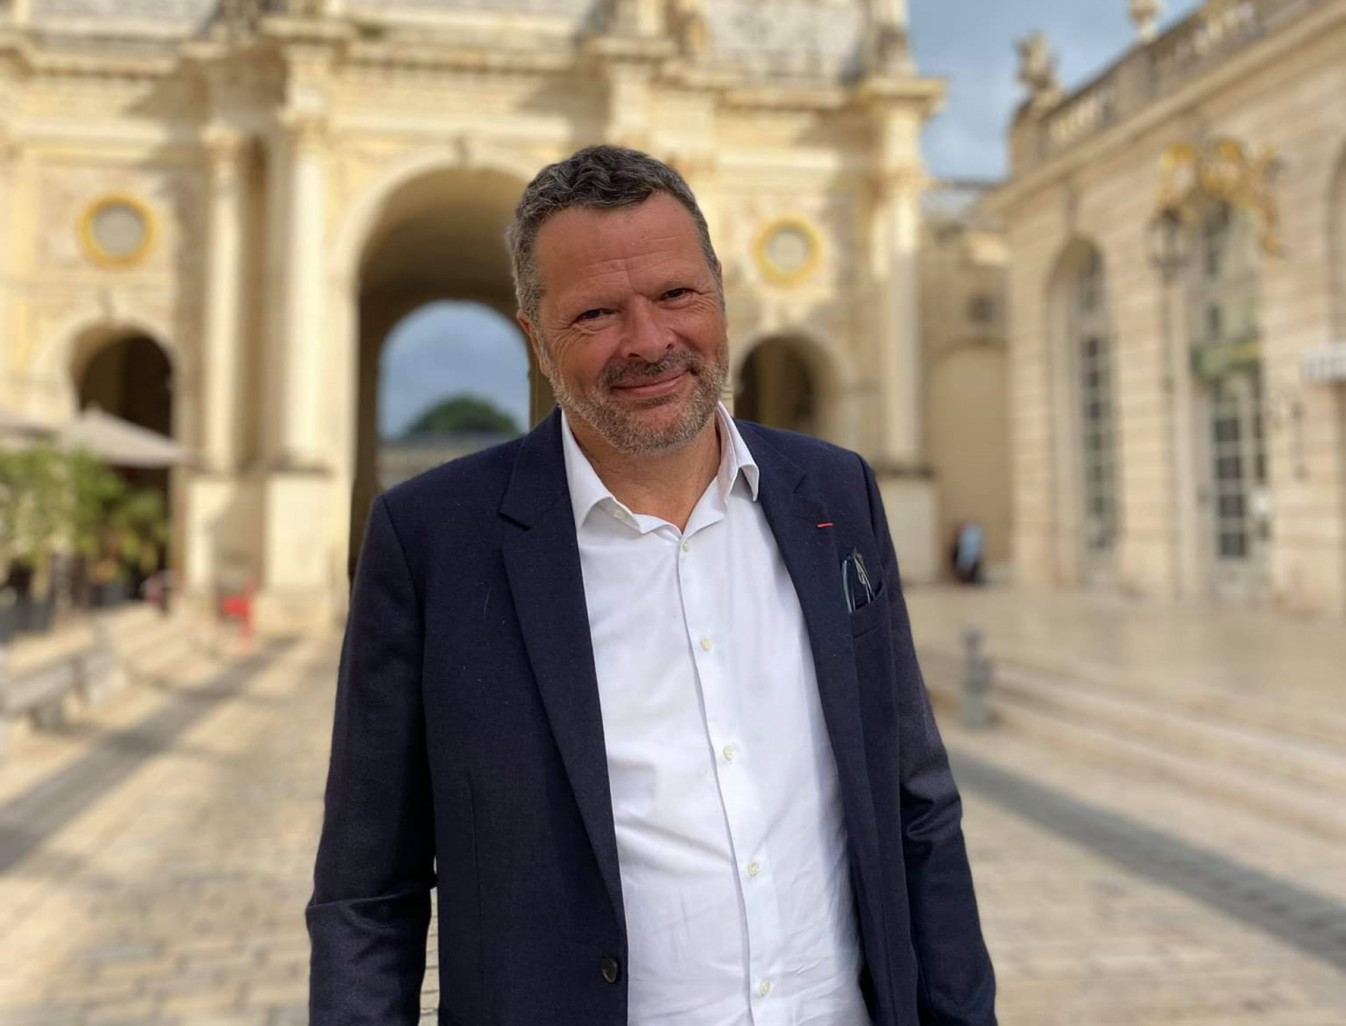 «La place Stanislas, c’est bien mais il faut rapidement embrayer sur une offre plus globale», assure François Werner, vice-président de la Métropole du Grand Nancy en charge de l’attractivité.